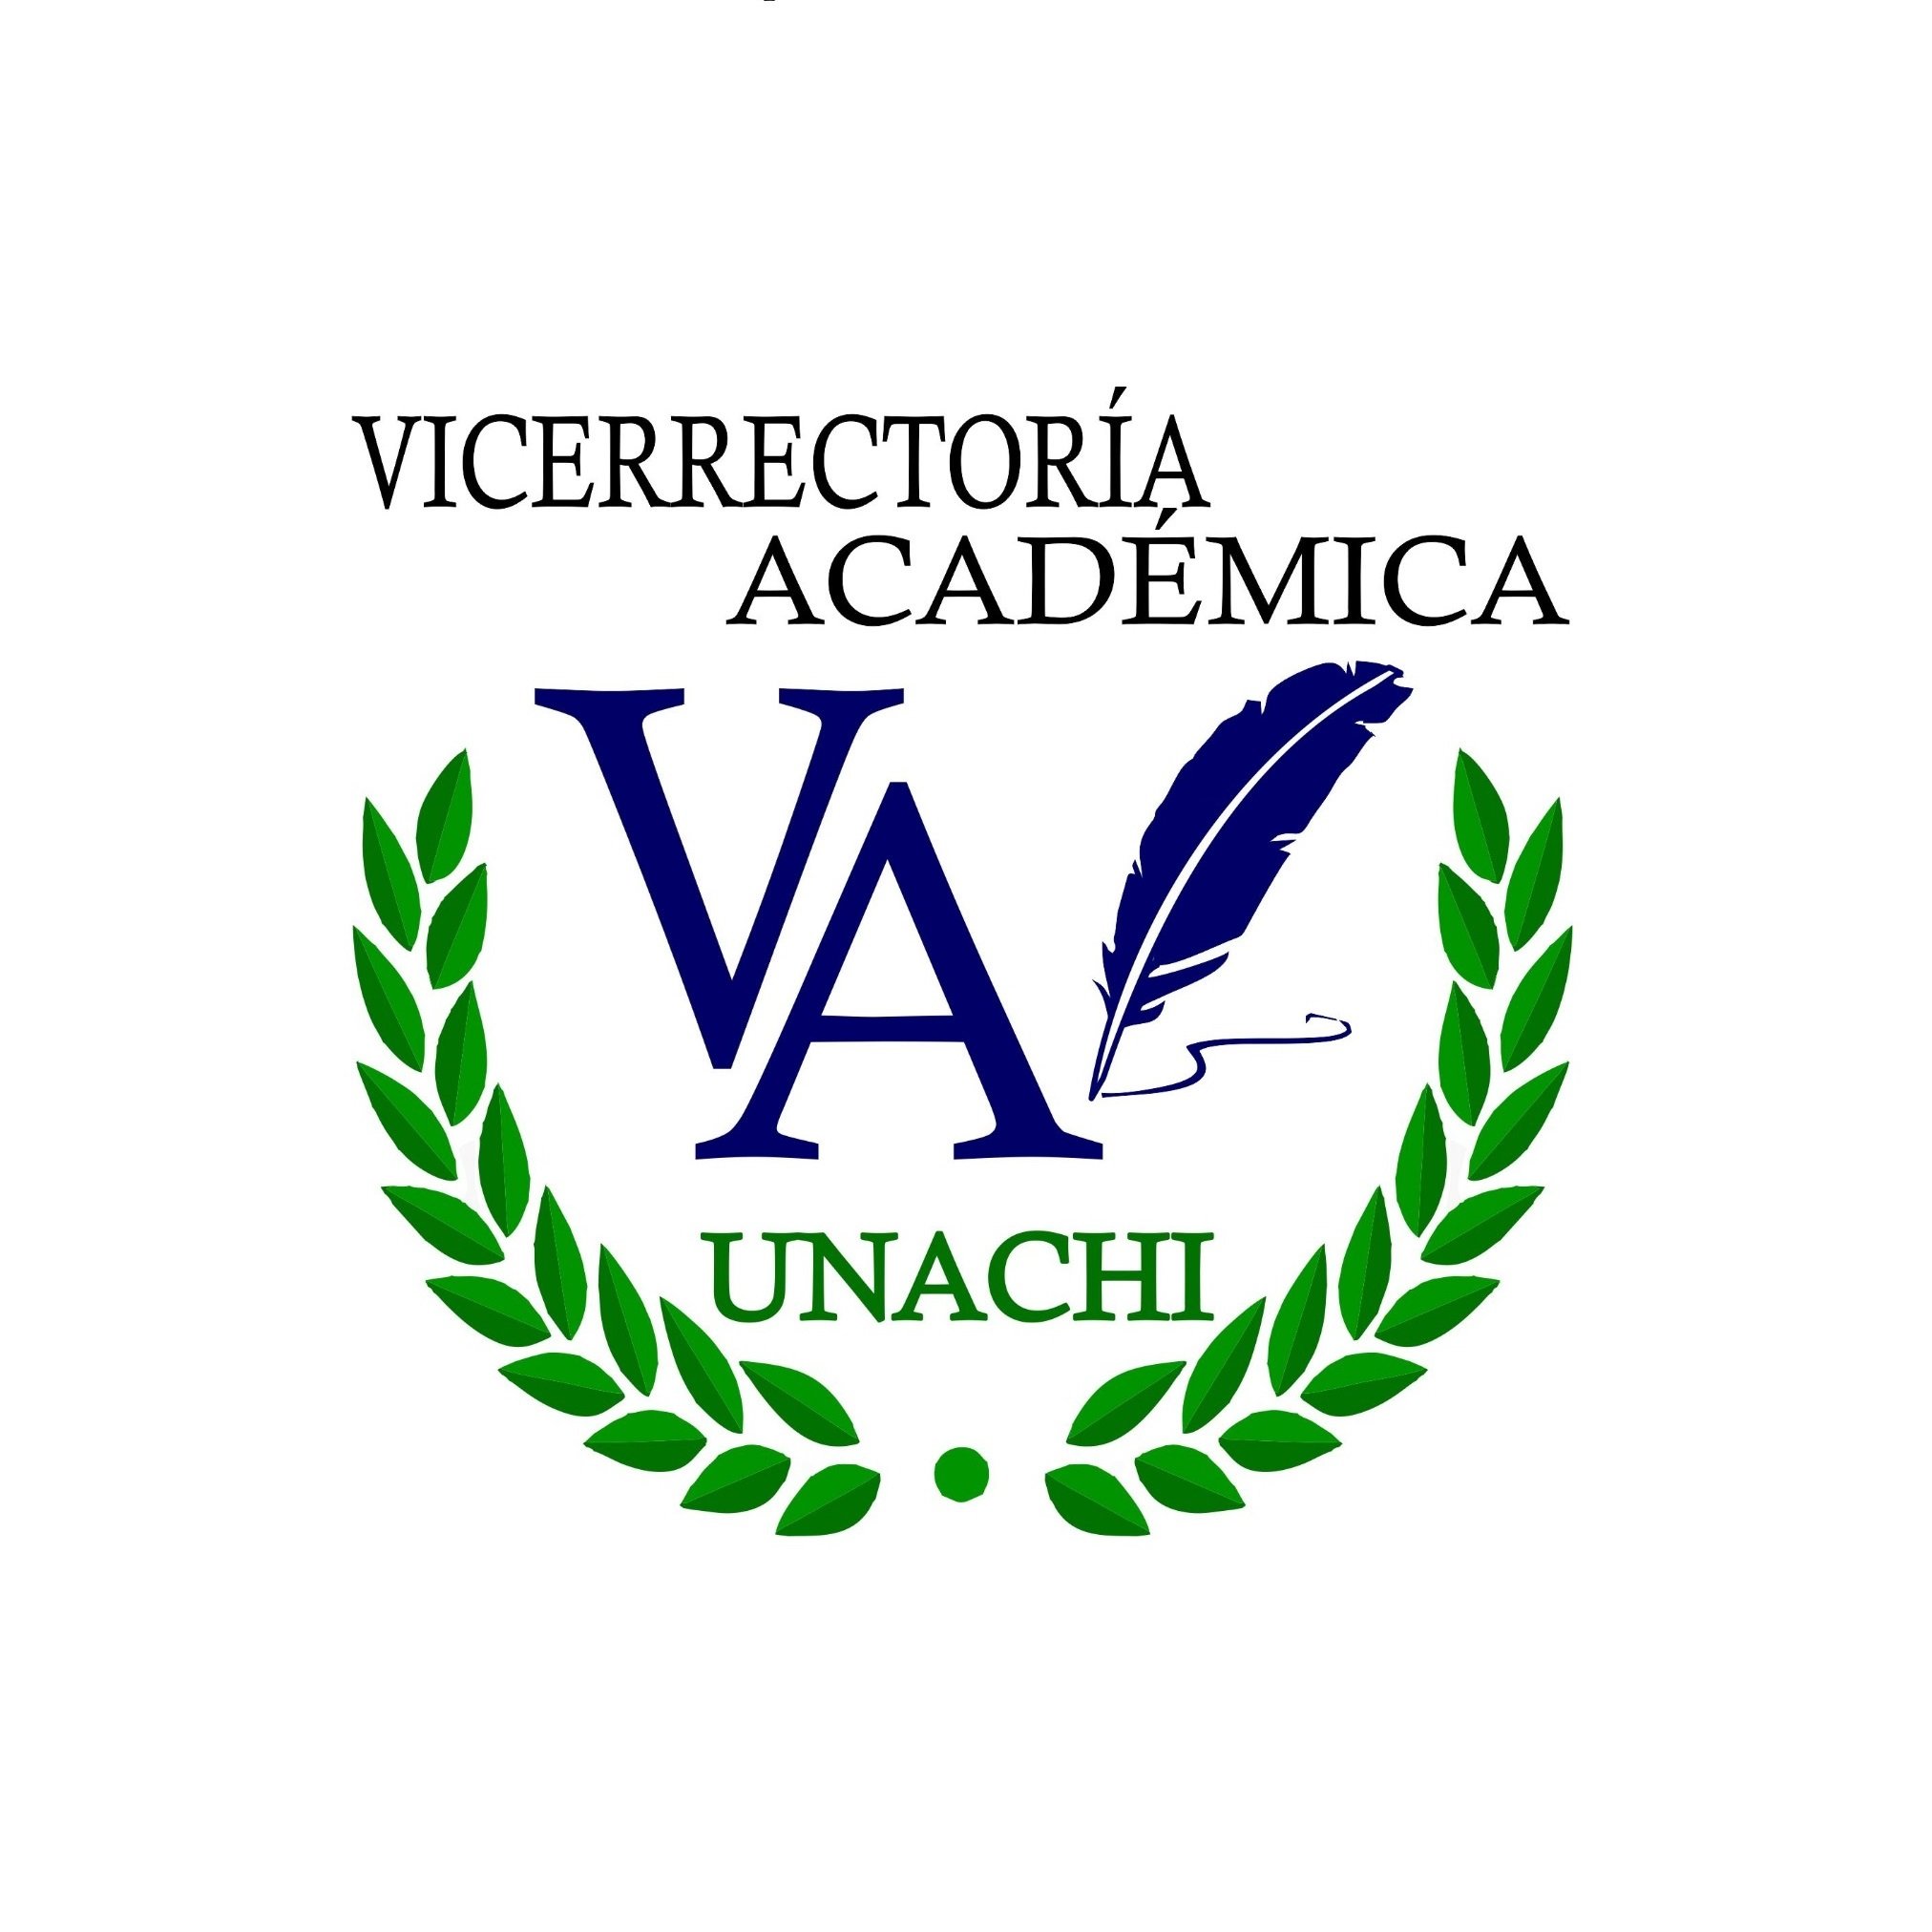 Vicerrectoría Académica de la Universidad Autónoma de Chiriquí.